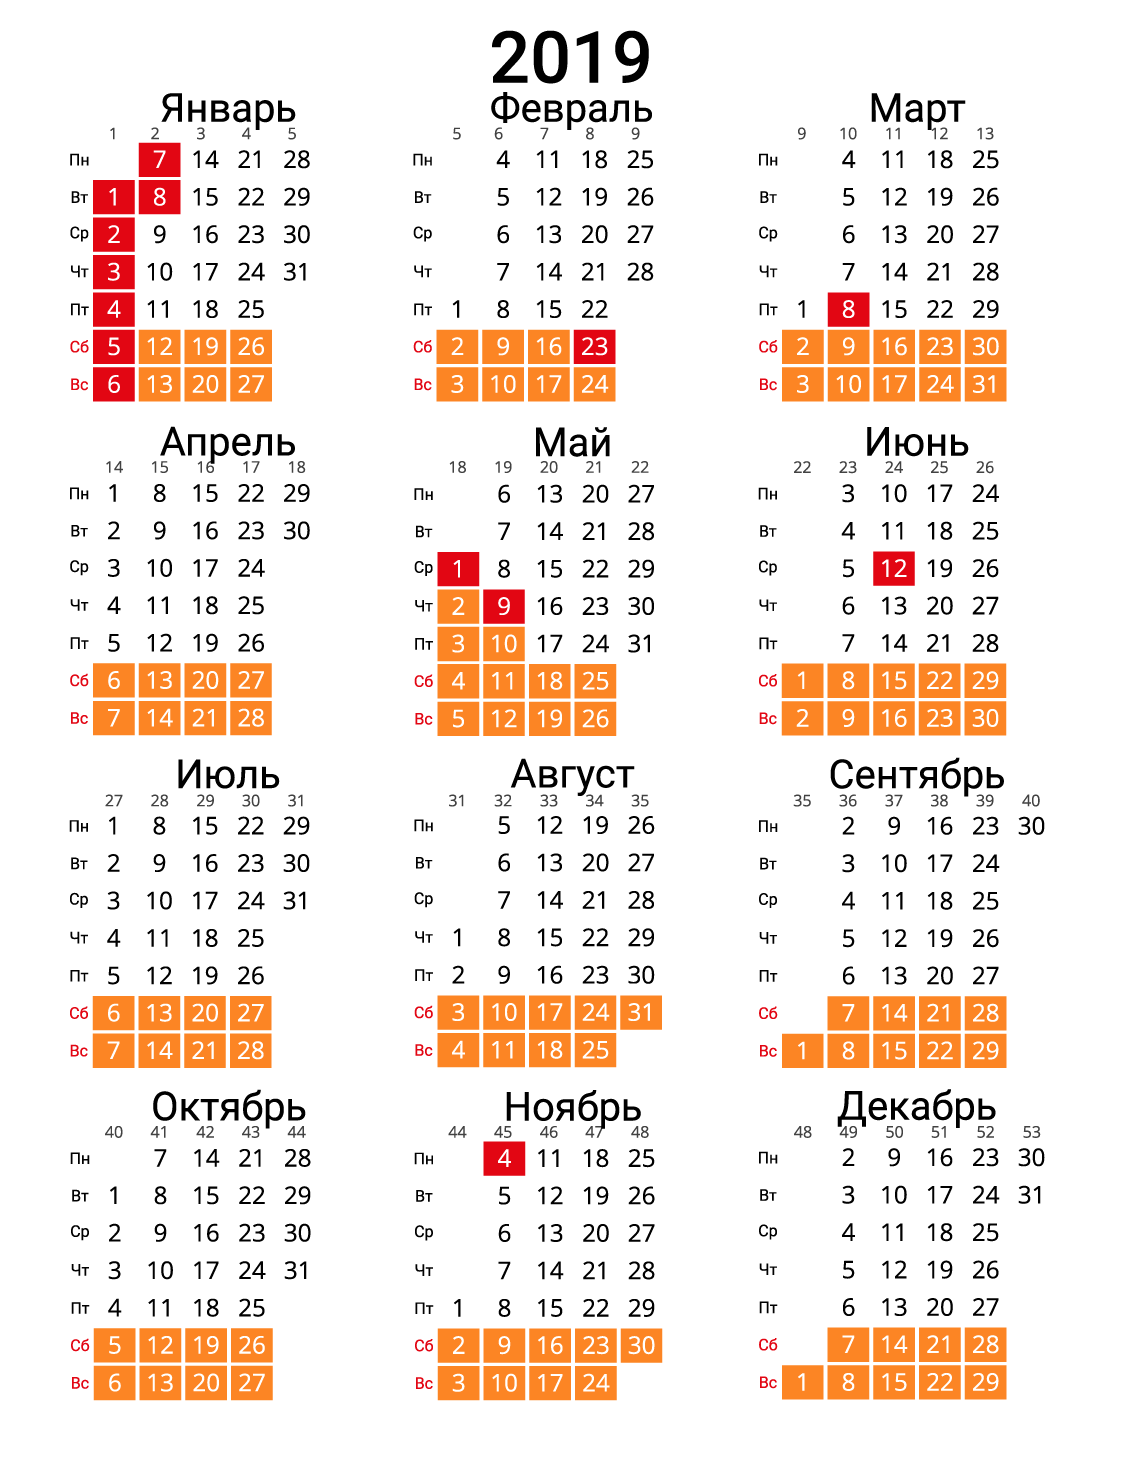 Новый график 2019. 2019 Год с номерами недель. Календарь 2019 года. Календарь 2019 с номерами недель. Календарик 2019 год.